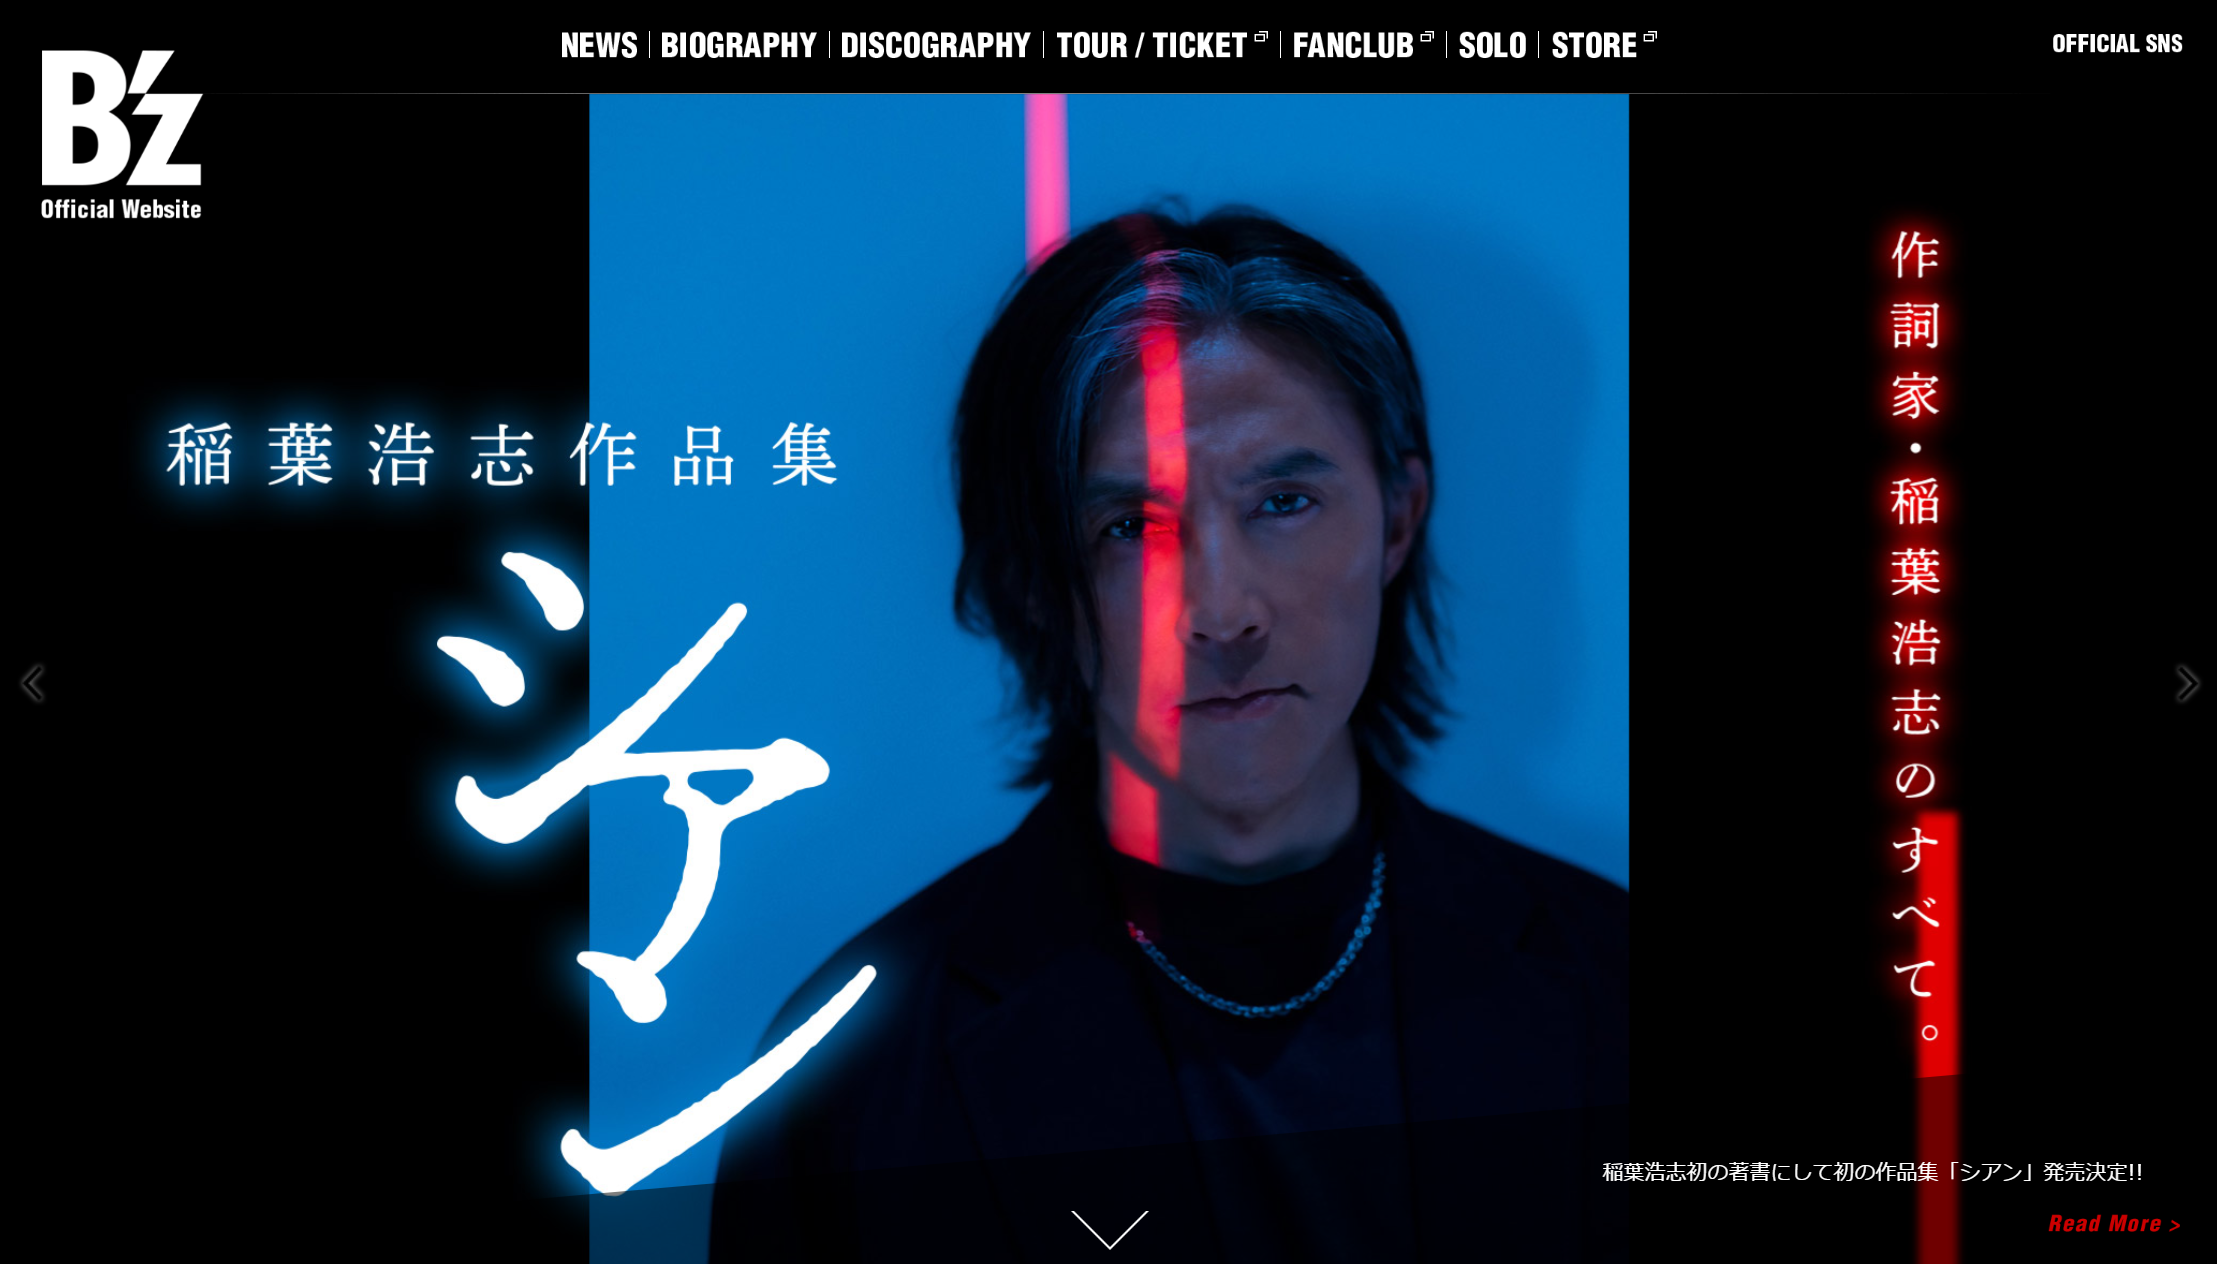 稲葉浩志「シアン」の案内が表示されている公式サイトのキャプチャ画像